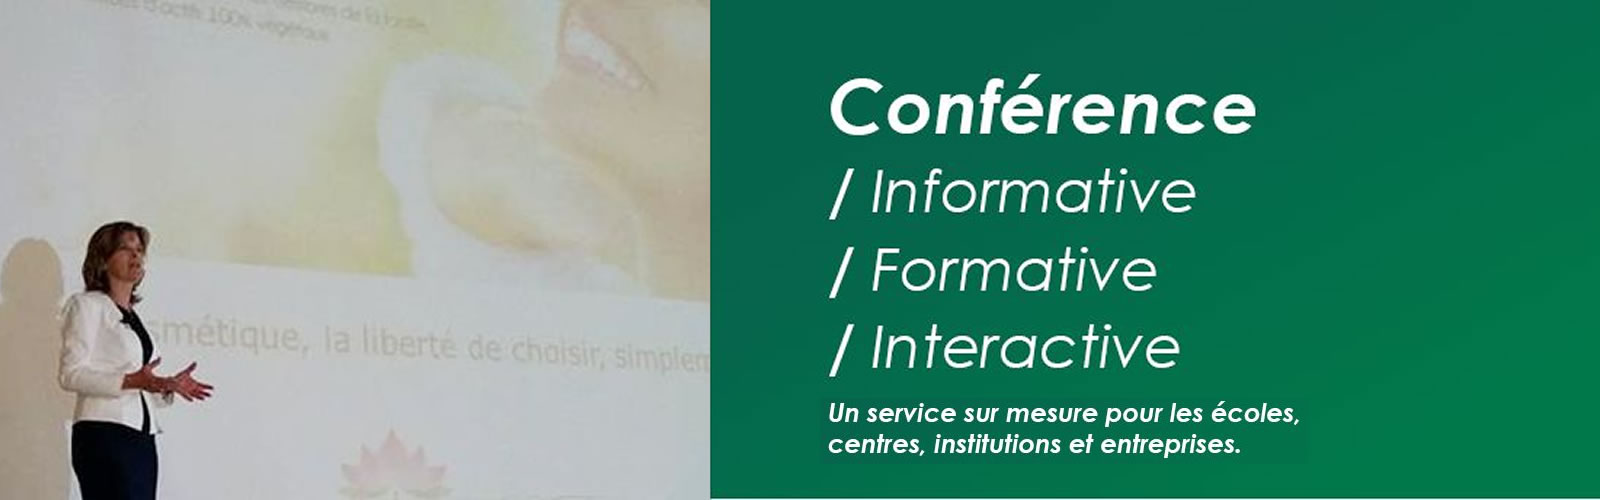 banniere-conferences